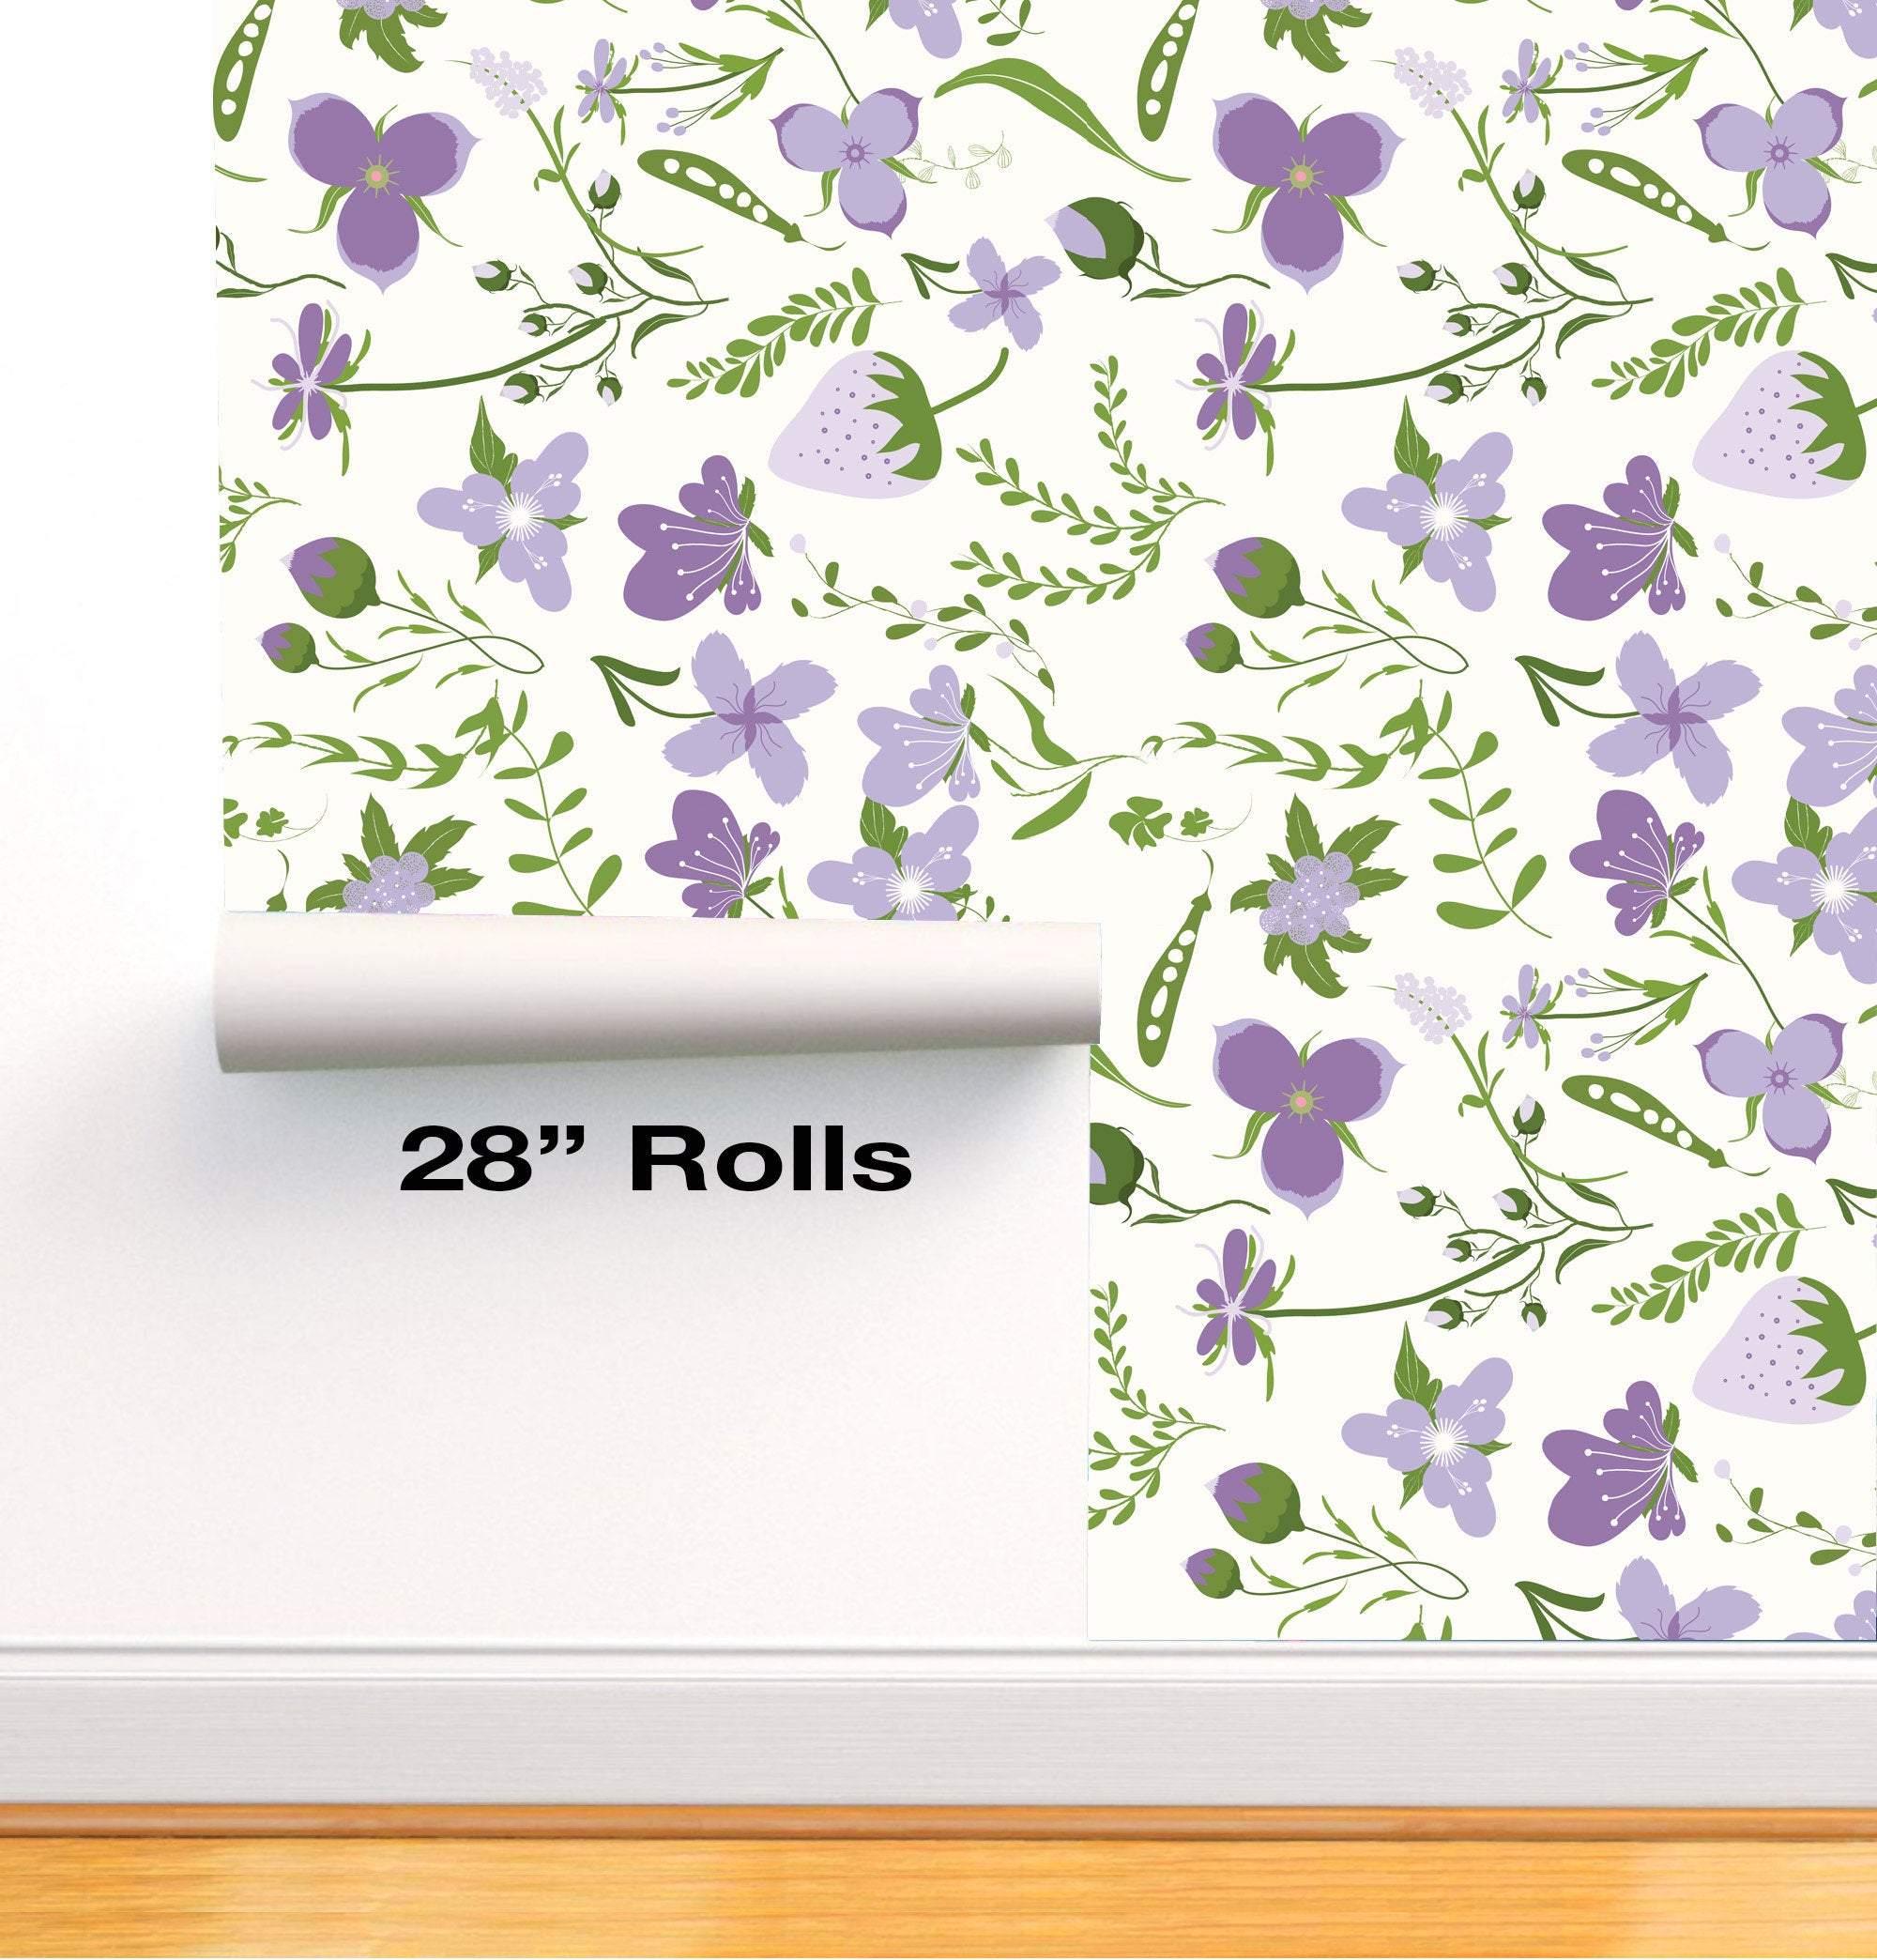 Purple Strawberry Butterfly ferns Removable Wallpaper in 28" Rolls